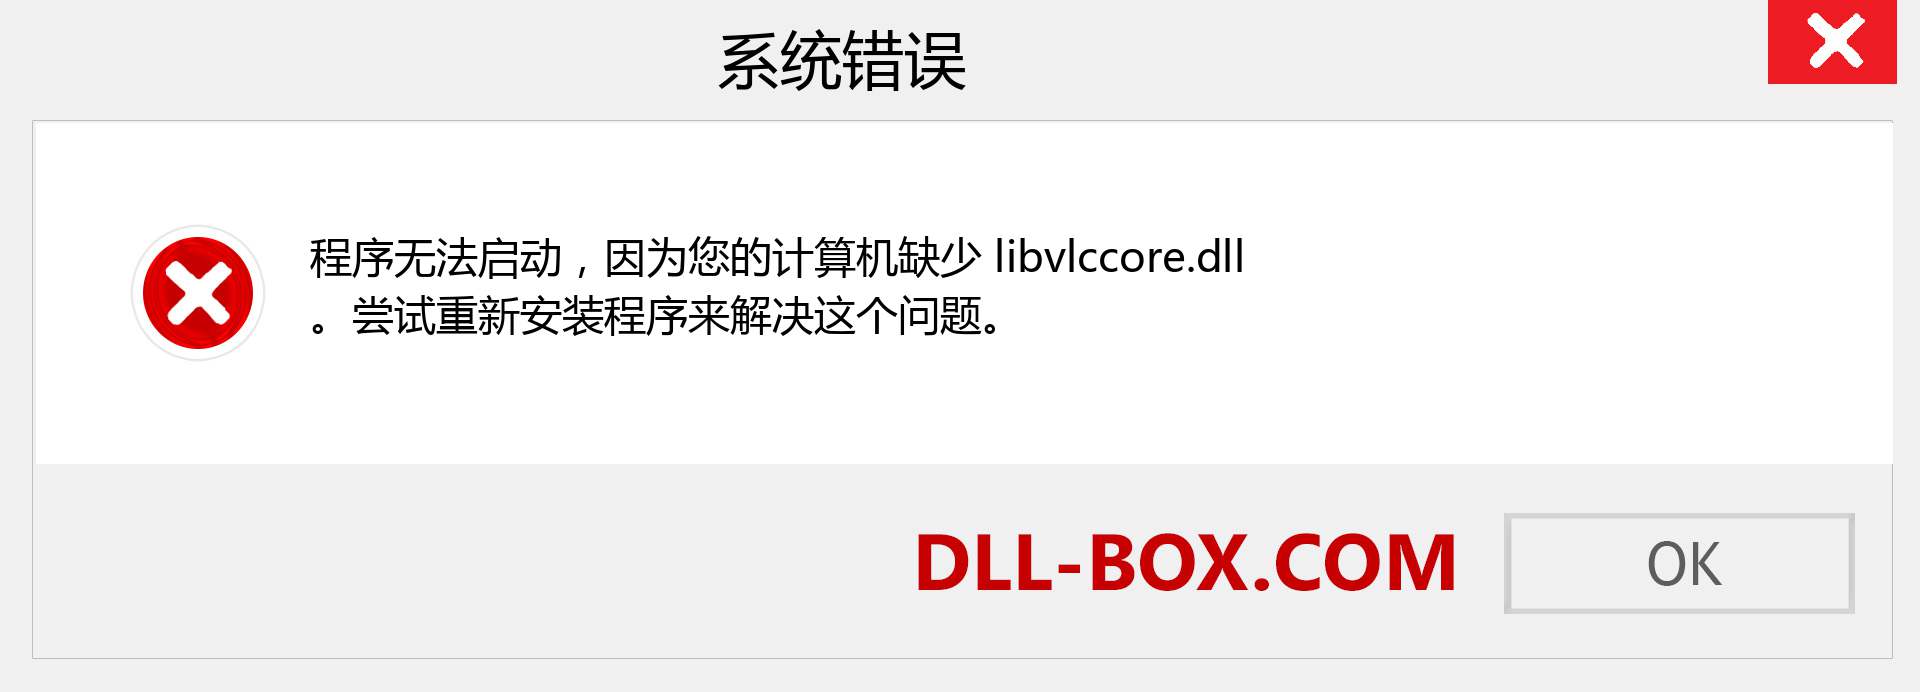 libvlccore.dll 文件丢失？。 适用于 Windows 7、8、10 的下载 - 修复 Windows、照片、图像上的 libvlccore dll 丢失错误